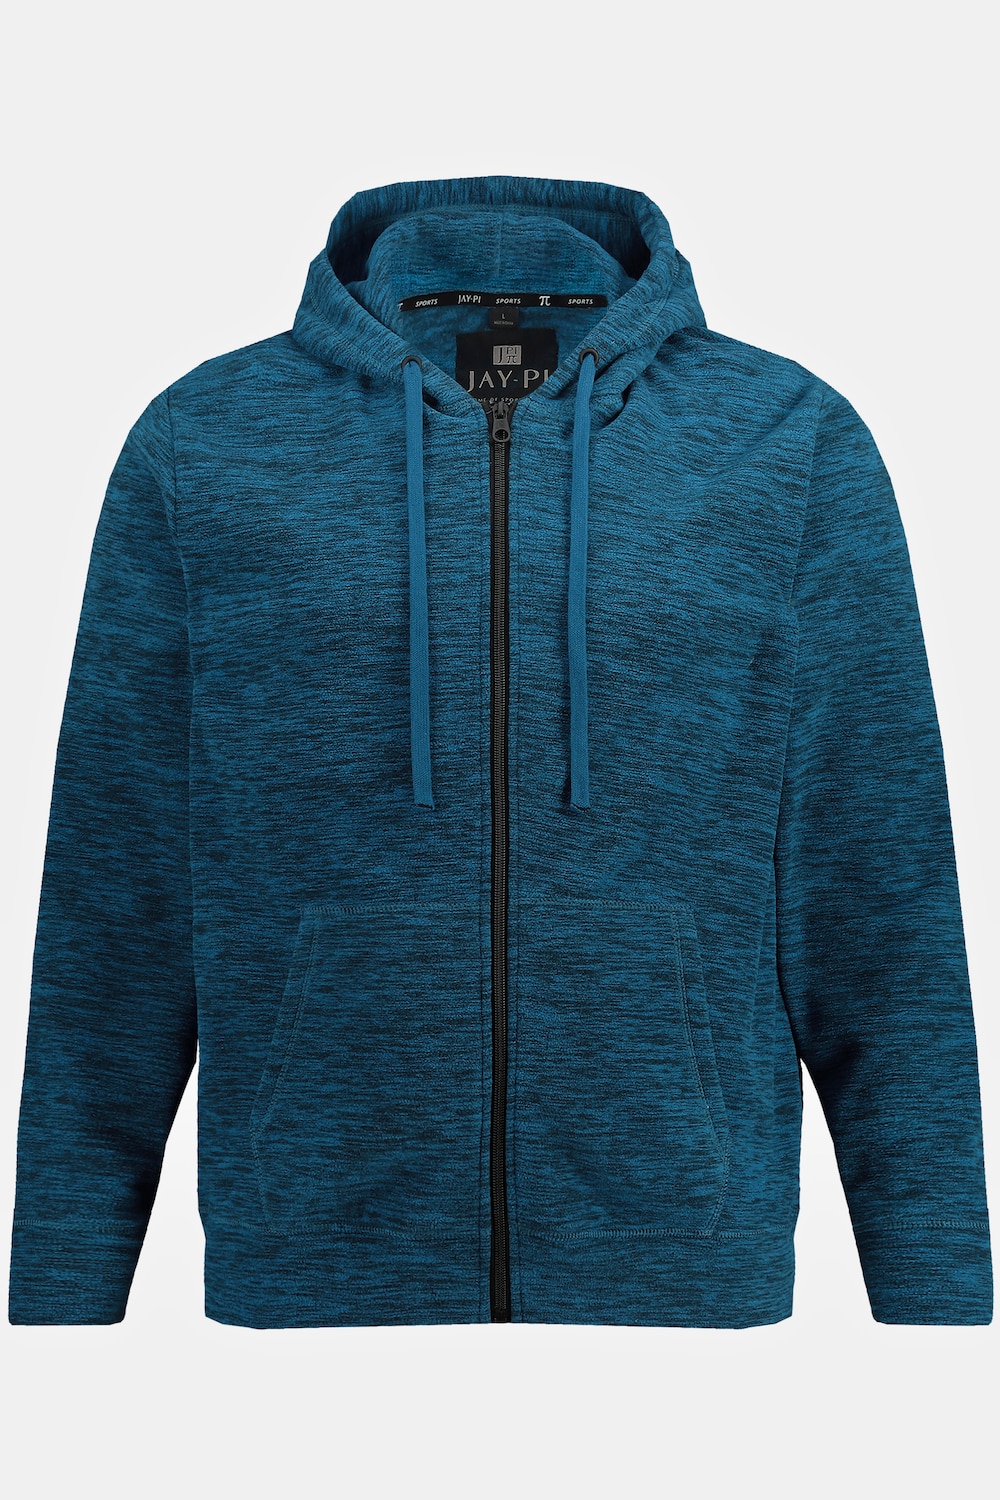 Grote Maten JAY-PI gebreid fleece hoodie-jackmale, blauw, Maat: 3XL, Polyester, JAY-PI